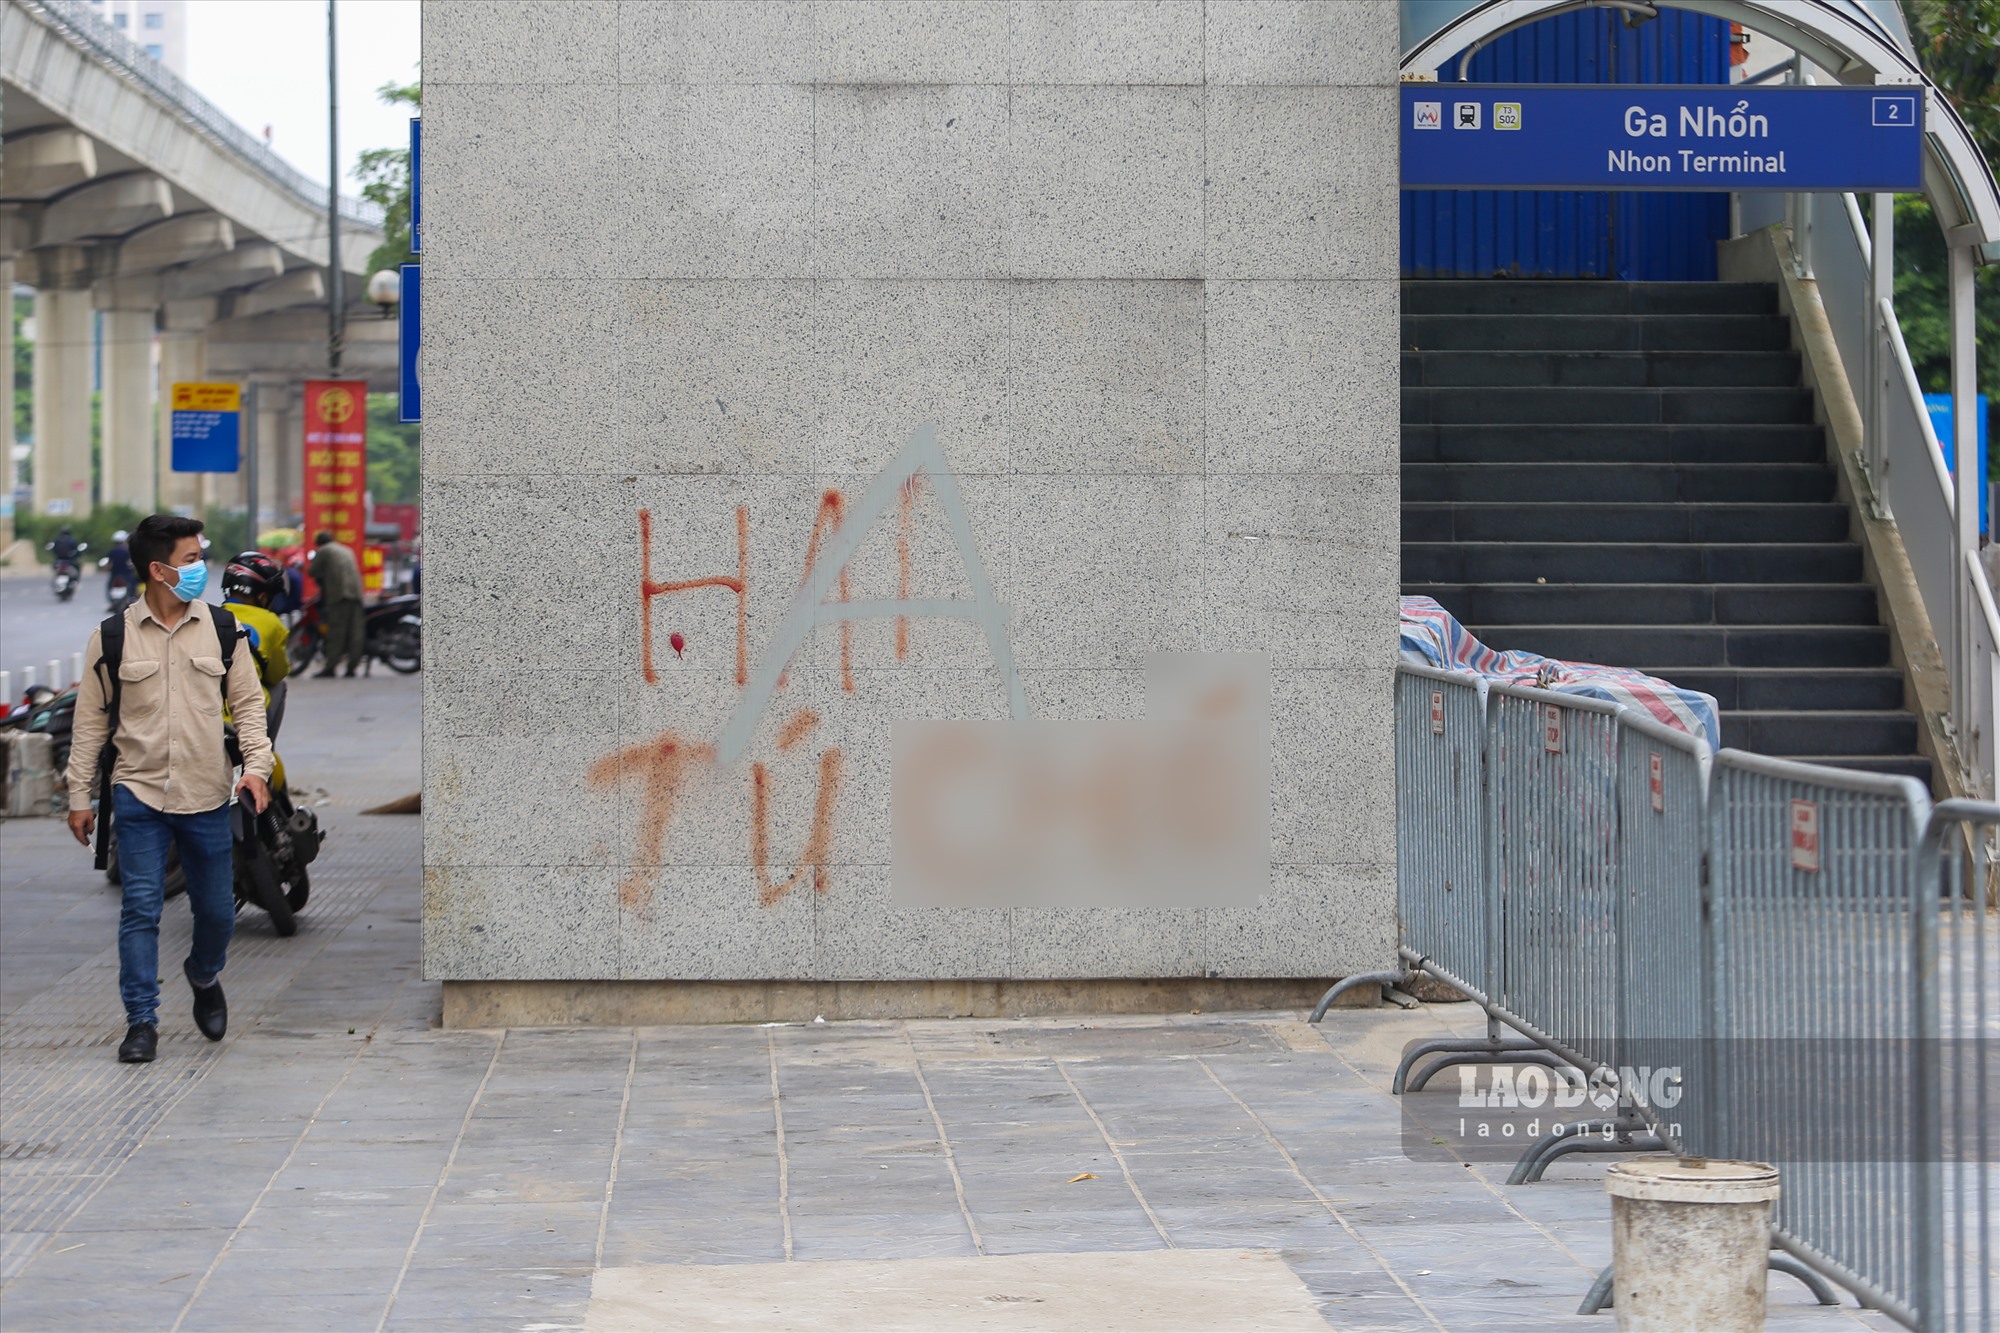 Có hiện tượng sơn xịt, viết chữ lên khu vực cột lắp đặt thang máy lên nhà ga.